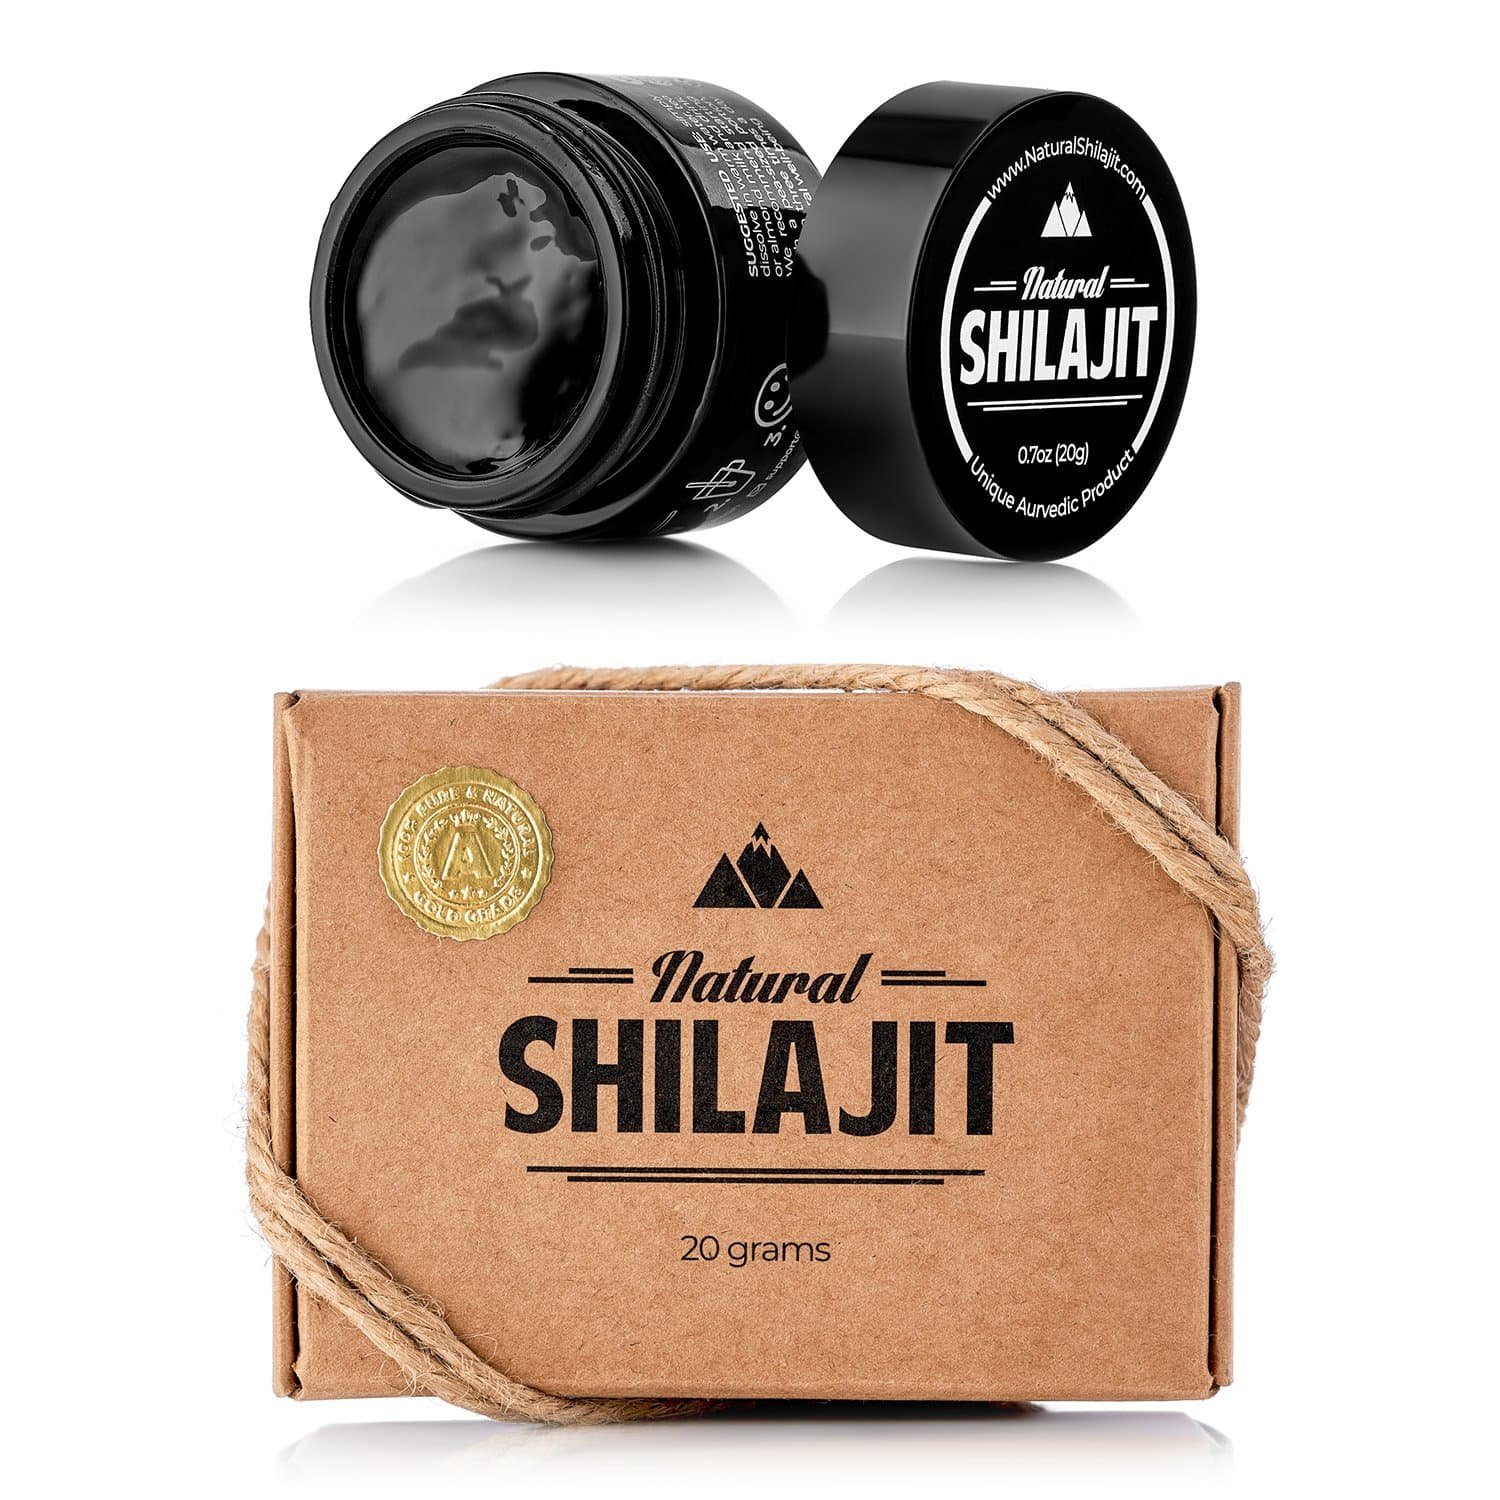 Get Best Deal At Natural Shilajit